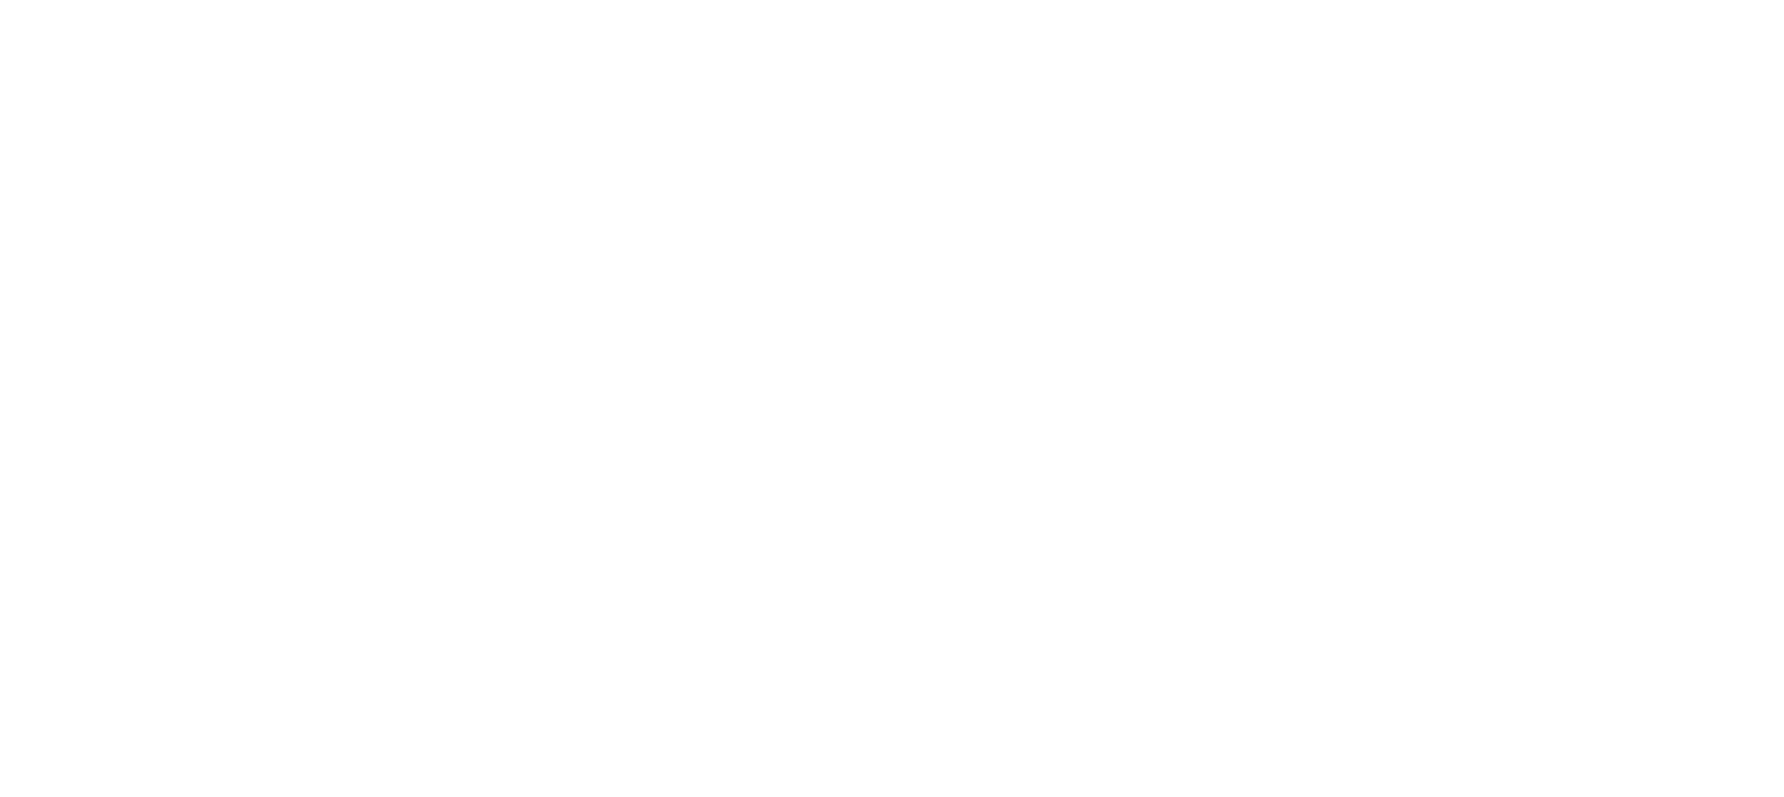 My Best Friend's Wedding Planner logo